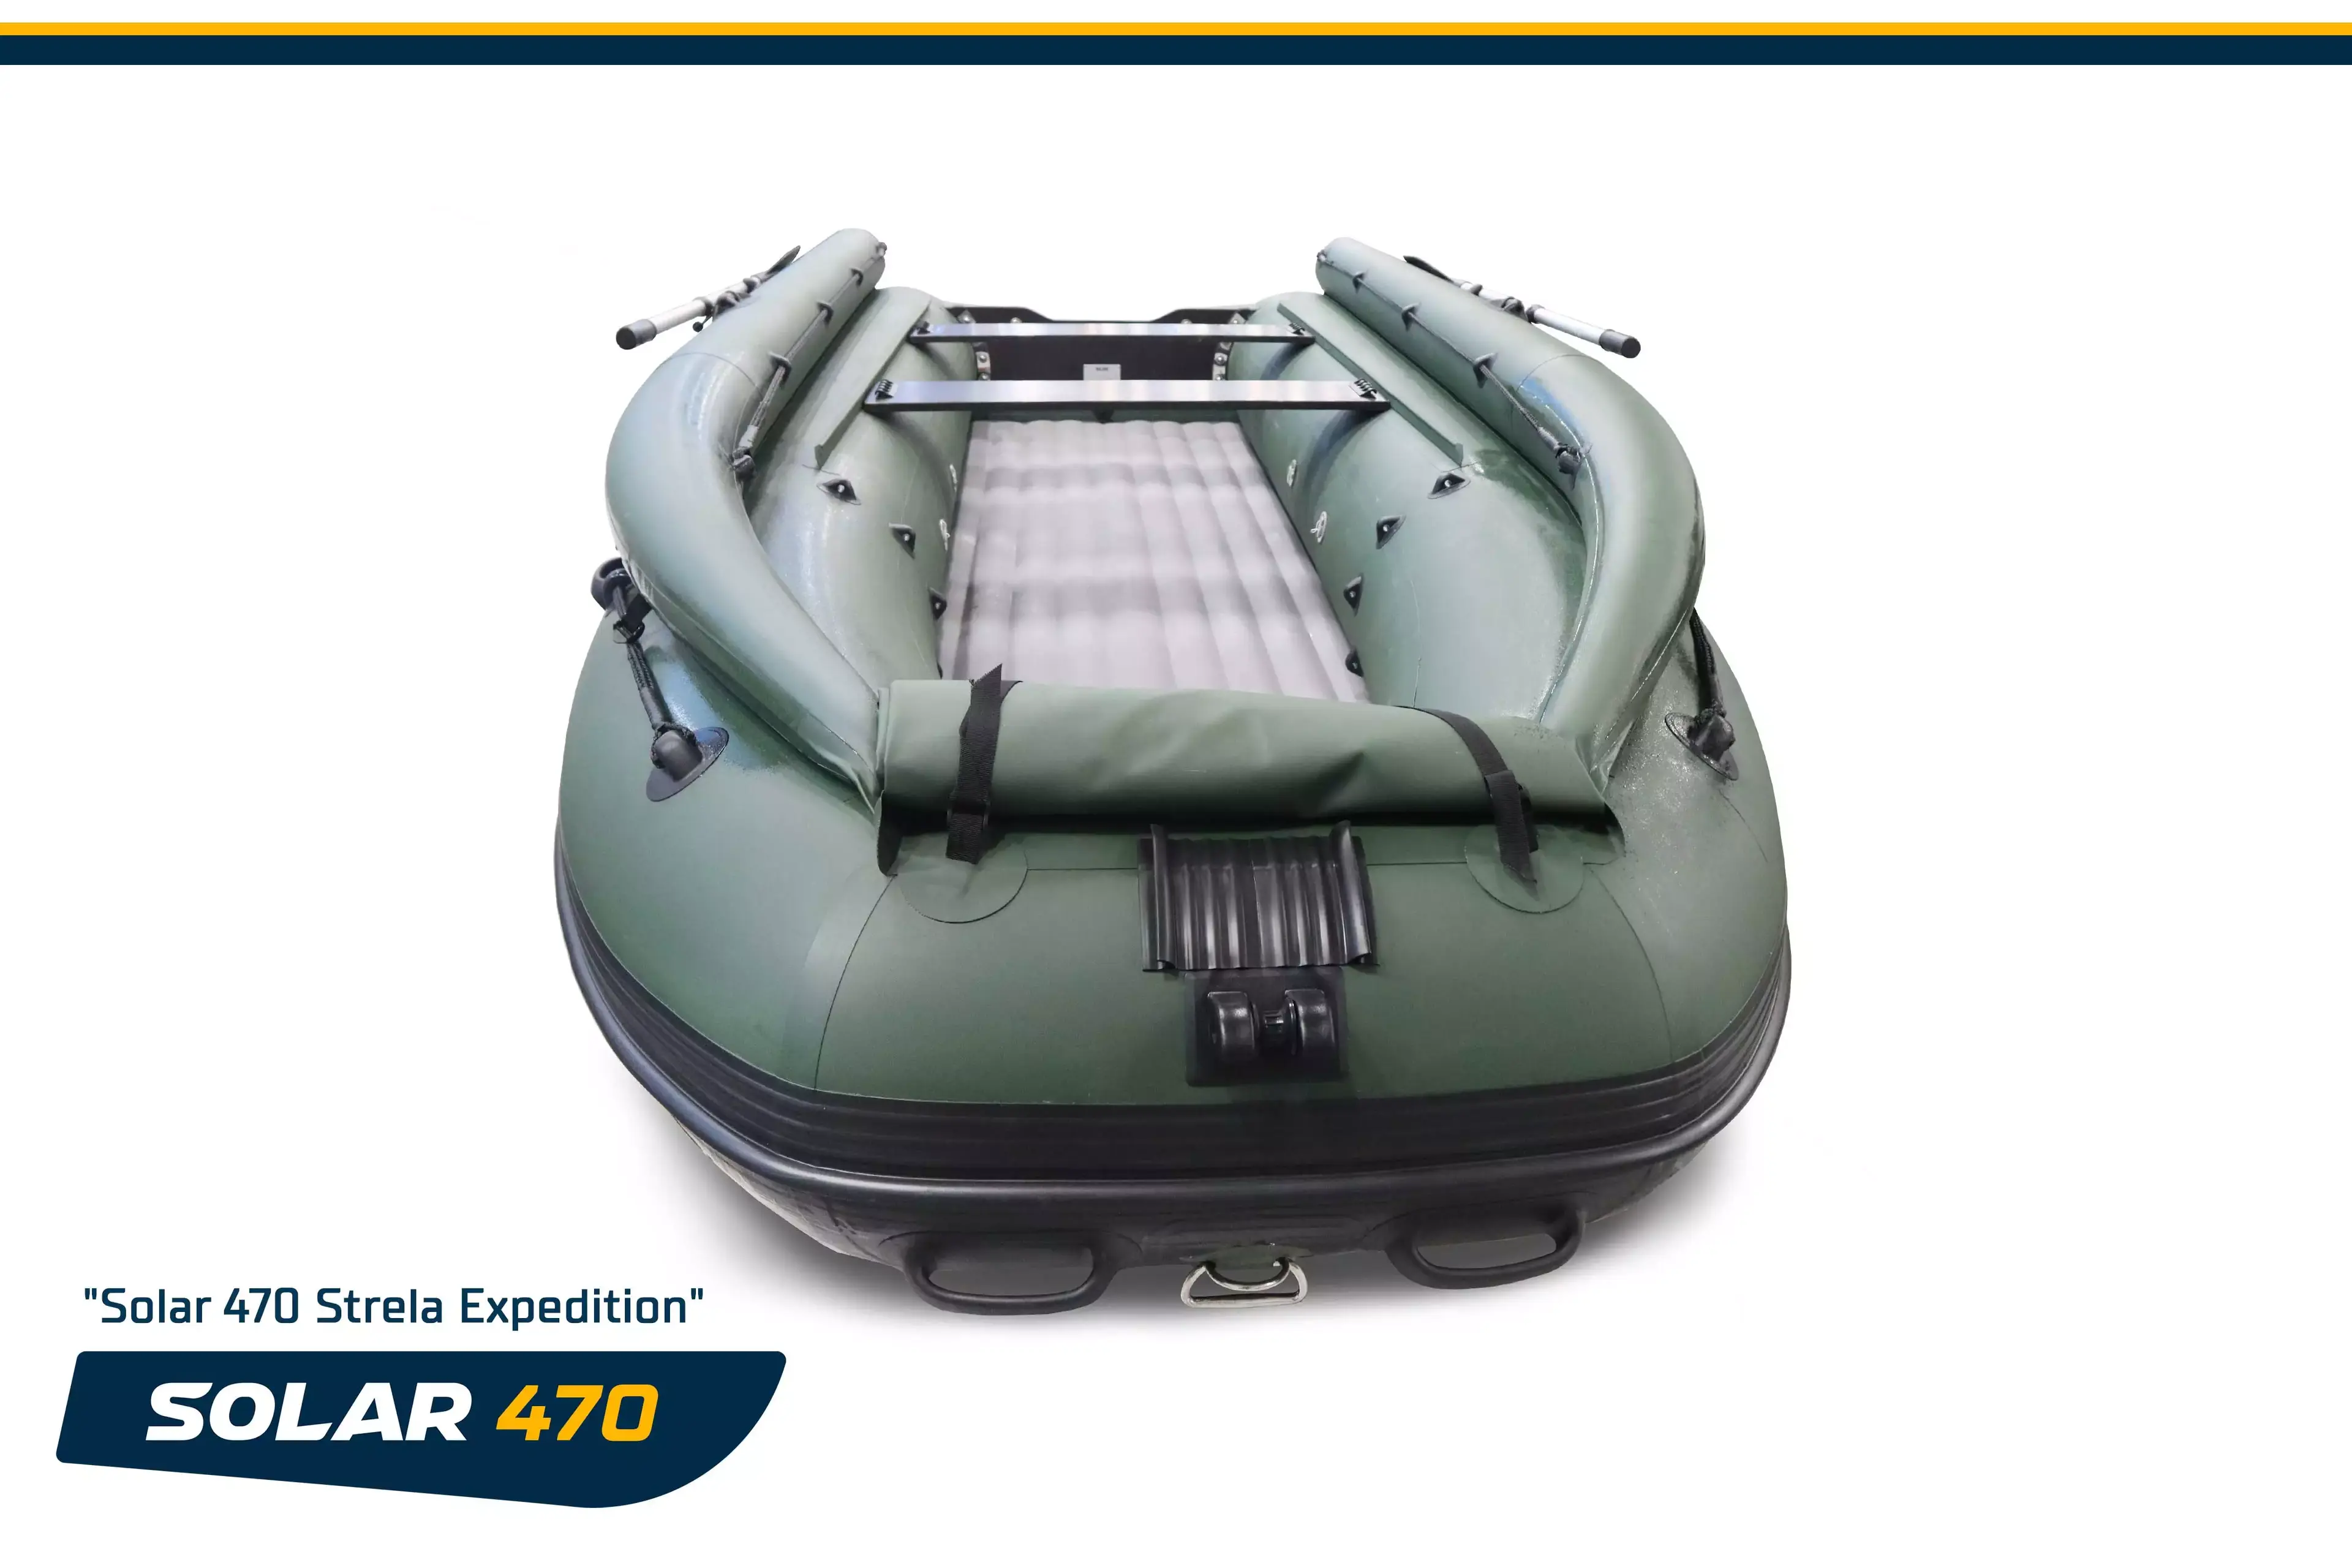 Лодка надувная моторная solar-470 strela jet tunnel (expedition)